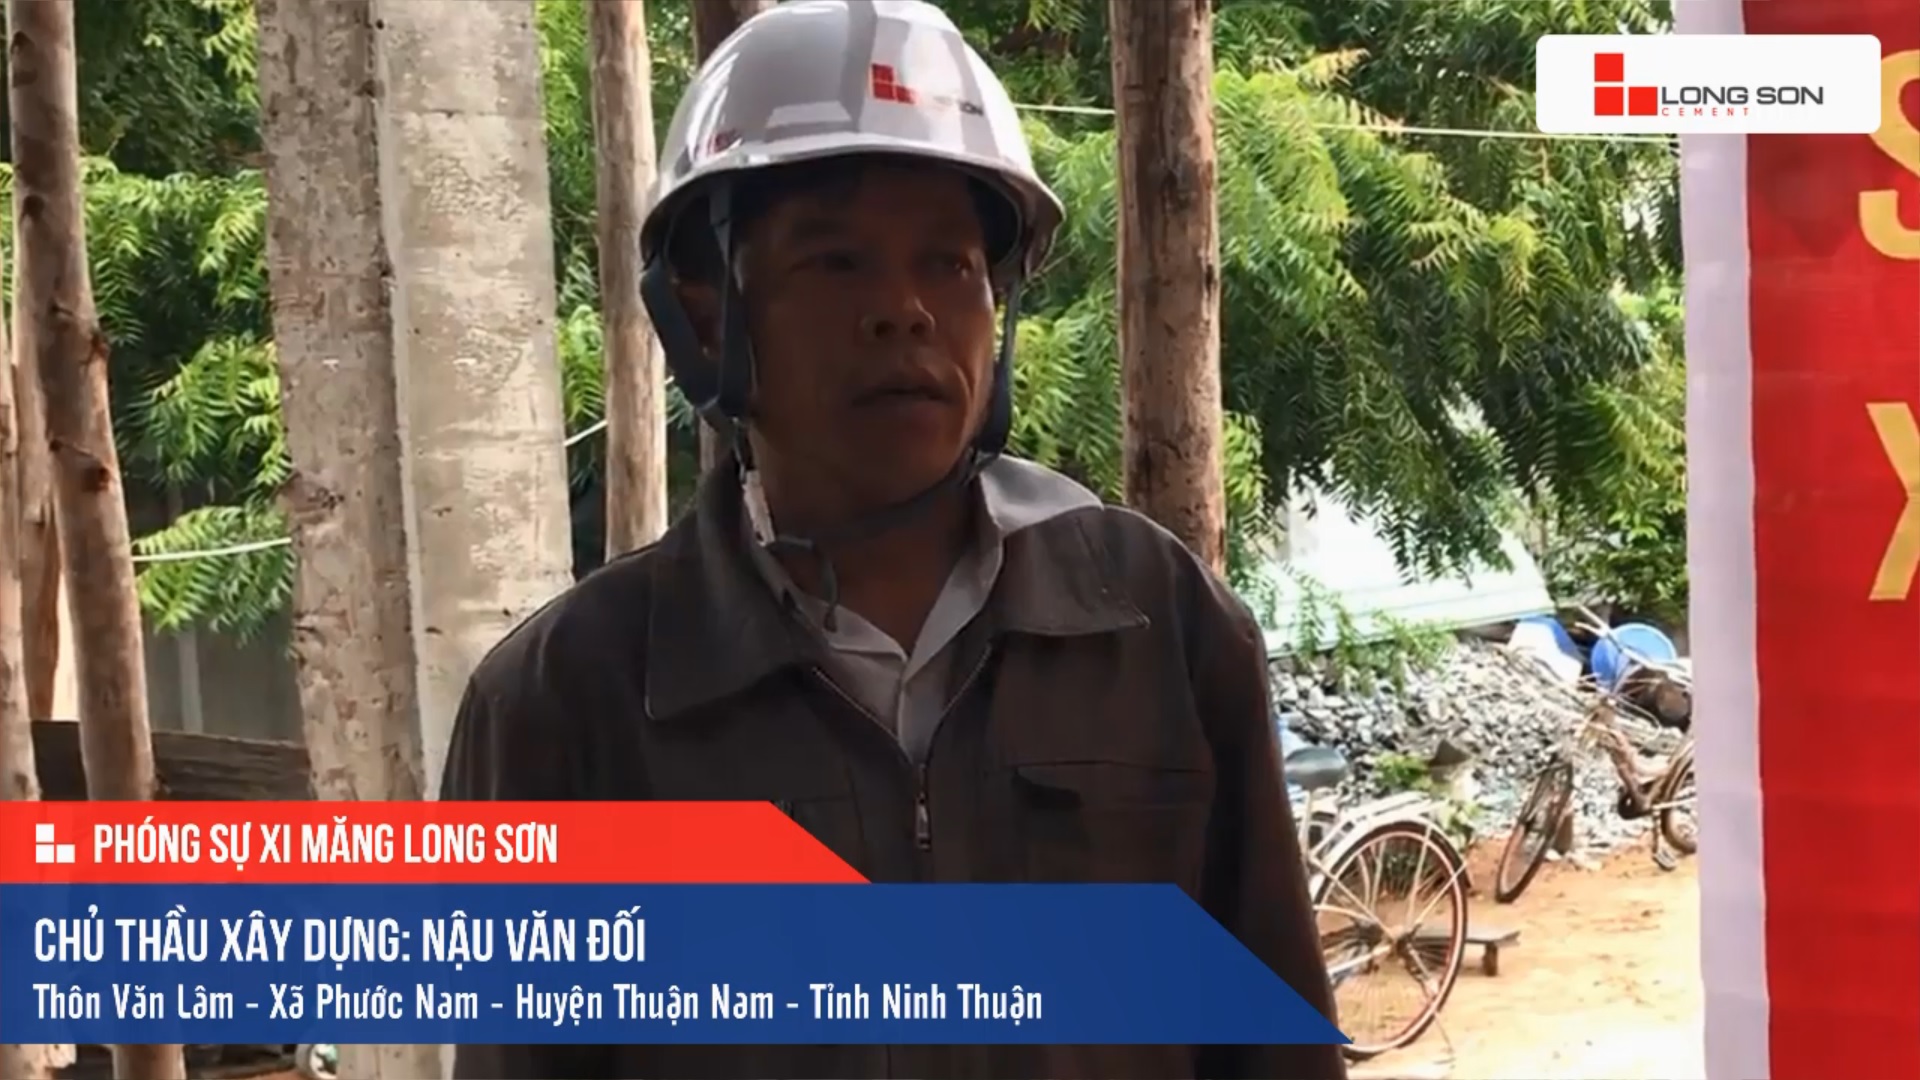 Phóng sự công trình sử dụng Xi măng Long Sơn ở Ninh Thuận 15.11.2020